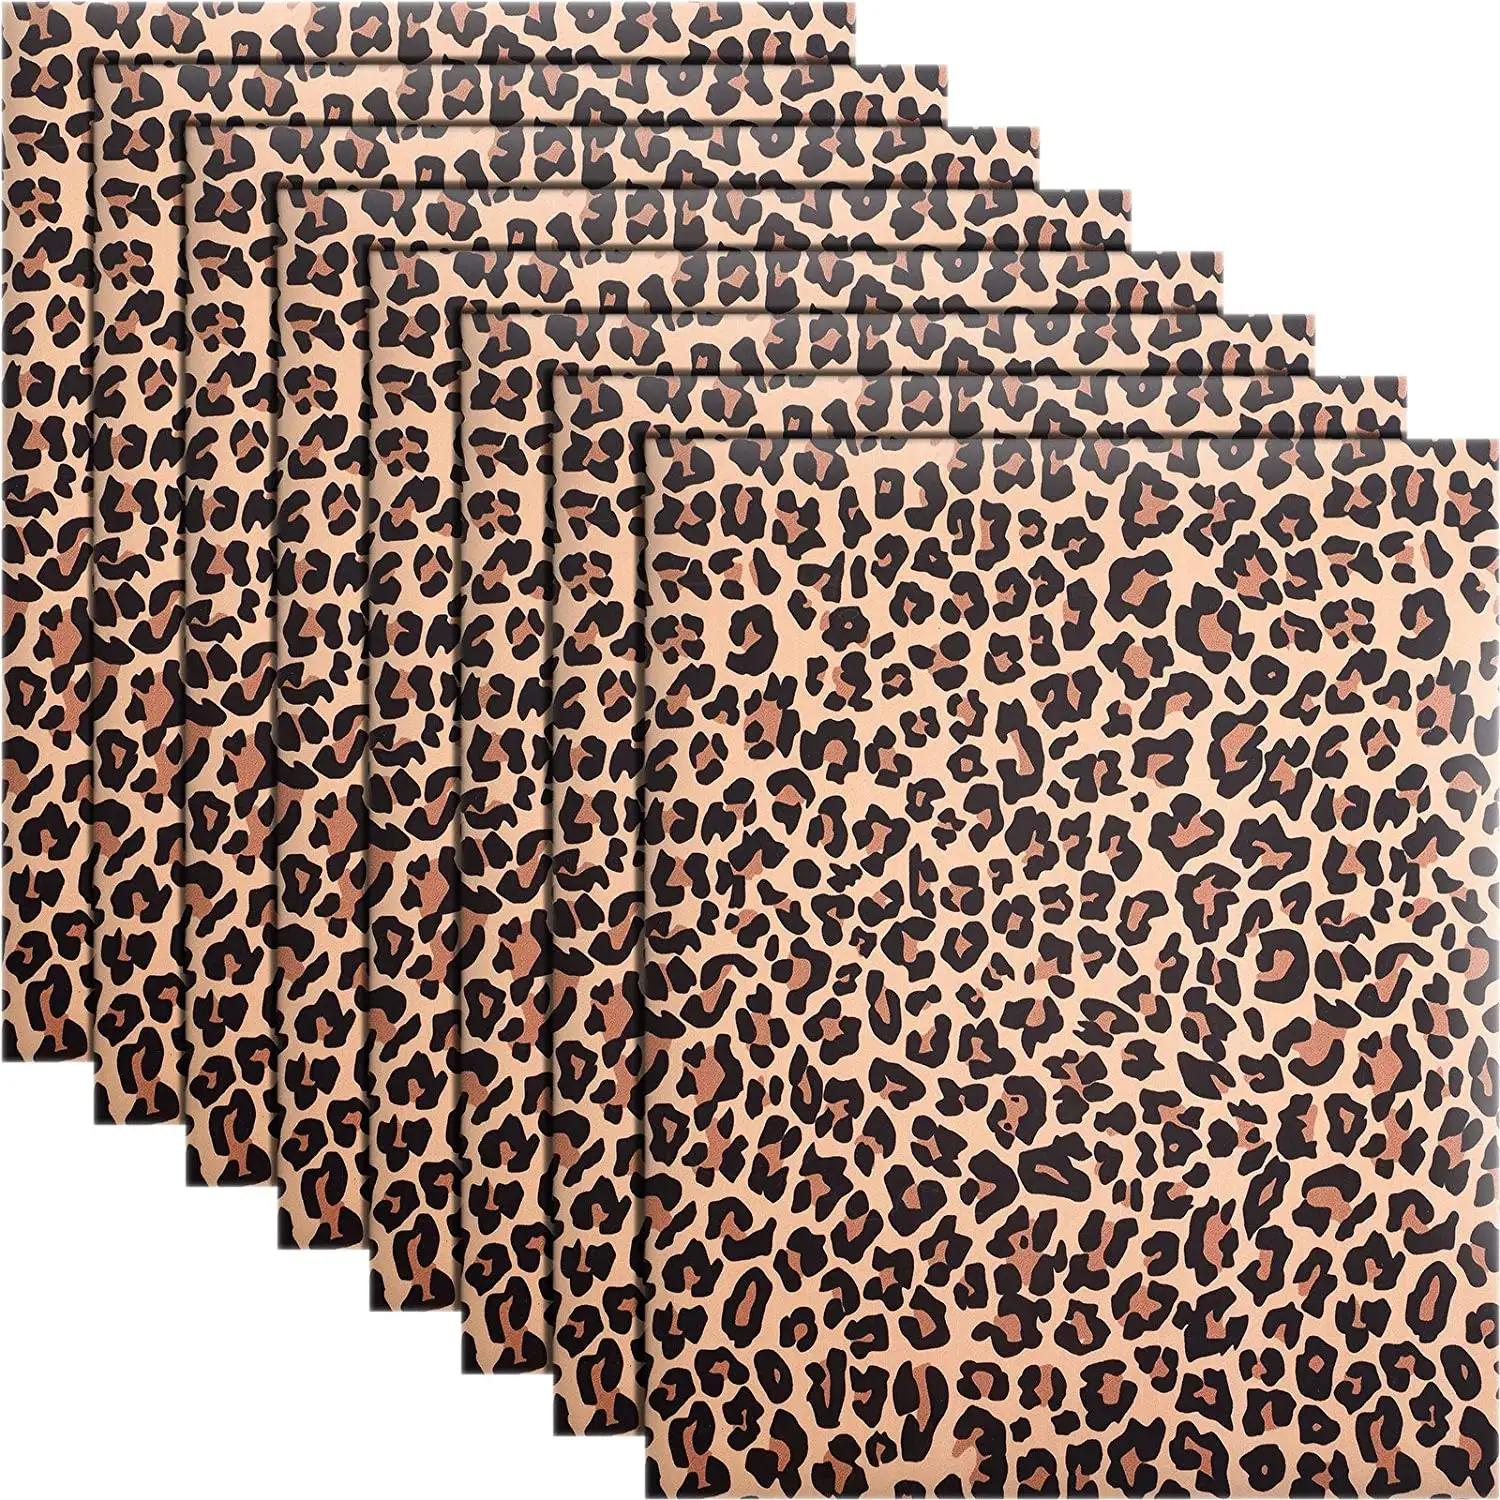 Vinyle imprimé léopard en vinyle, 1 pièce, Animal sauvage, HTV, transfert de chaleur, pour t-shirts, sacs, chapeaux, décoration artisanale